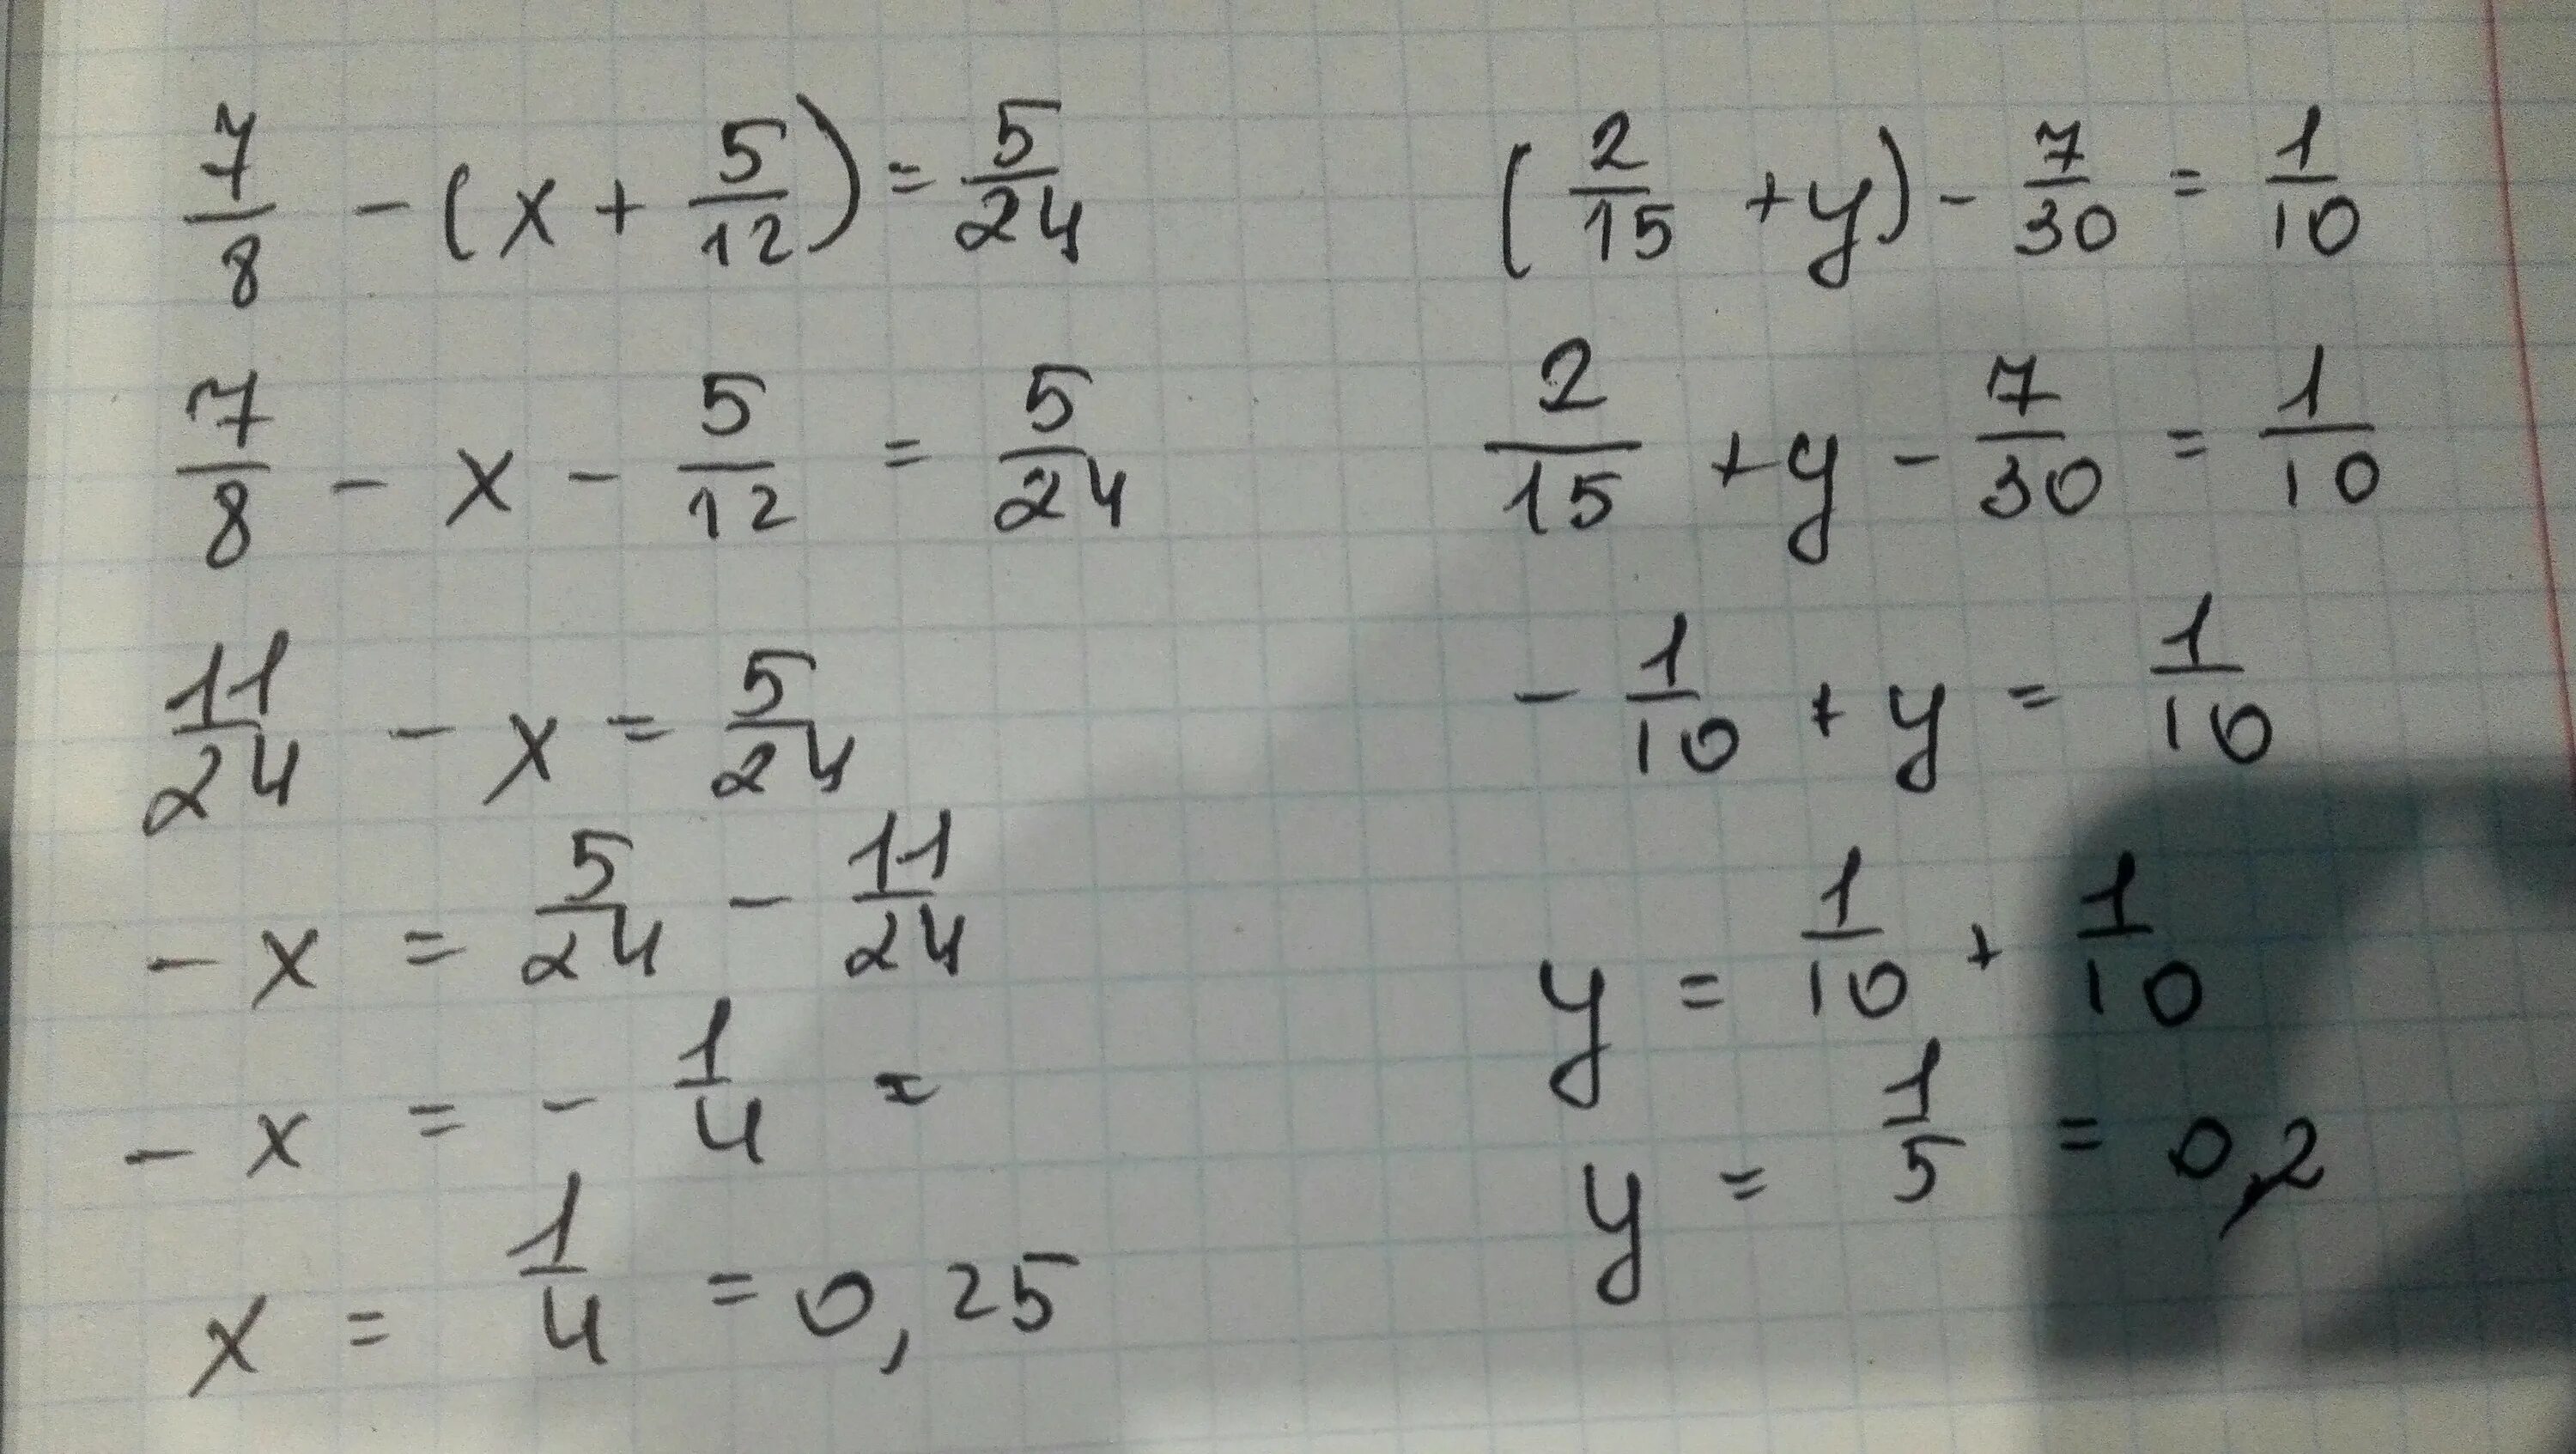 ( 2/15+1 7/12) ×30/103-2 2 1/4 ×9/32+2 1/3 решение. (2/15+1 7/12)*30/103-2:2 1/4*9/32+2 1/3. ( 15 2 + 1 12 7 ) ⋅ 103 30 − 2 : 2 4 1 ⋅ 32 9 + 2 4 3. 10) -30-(12-2x)=8-2x. 5 x 1 12 30